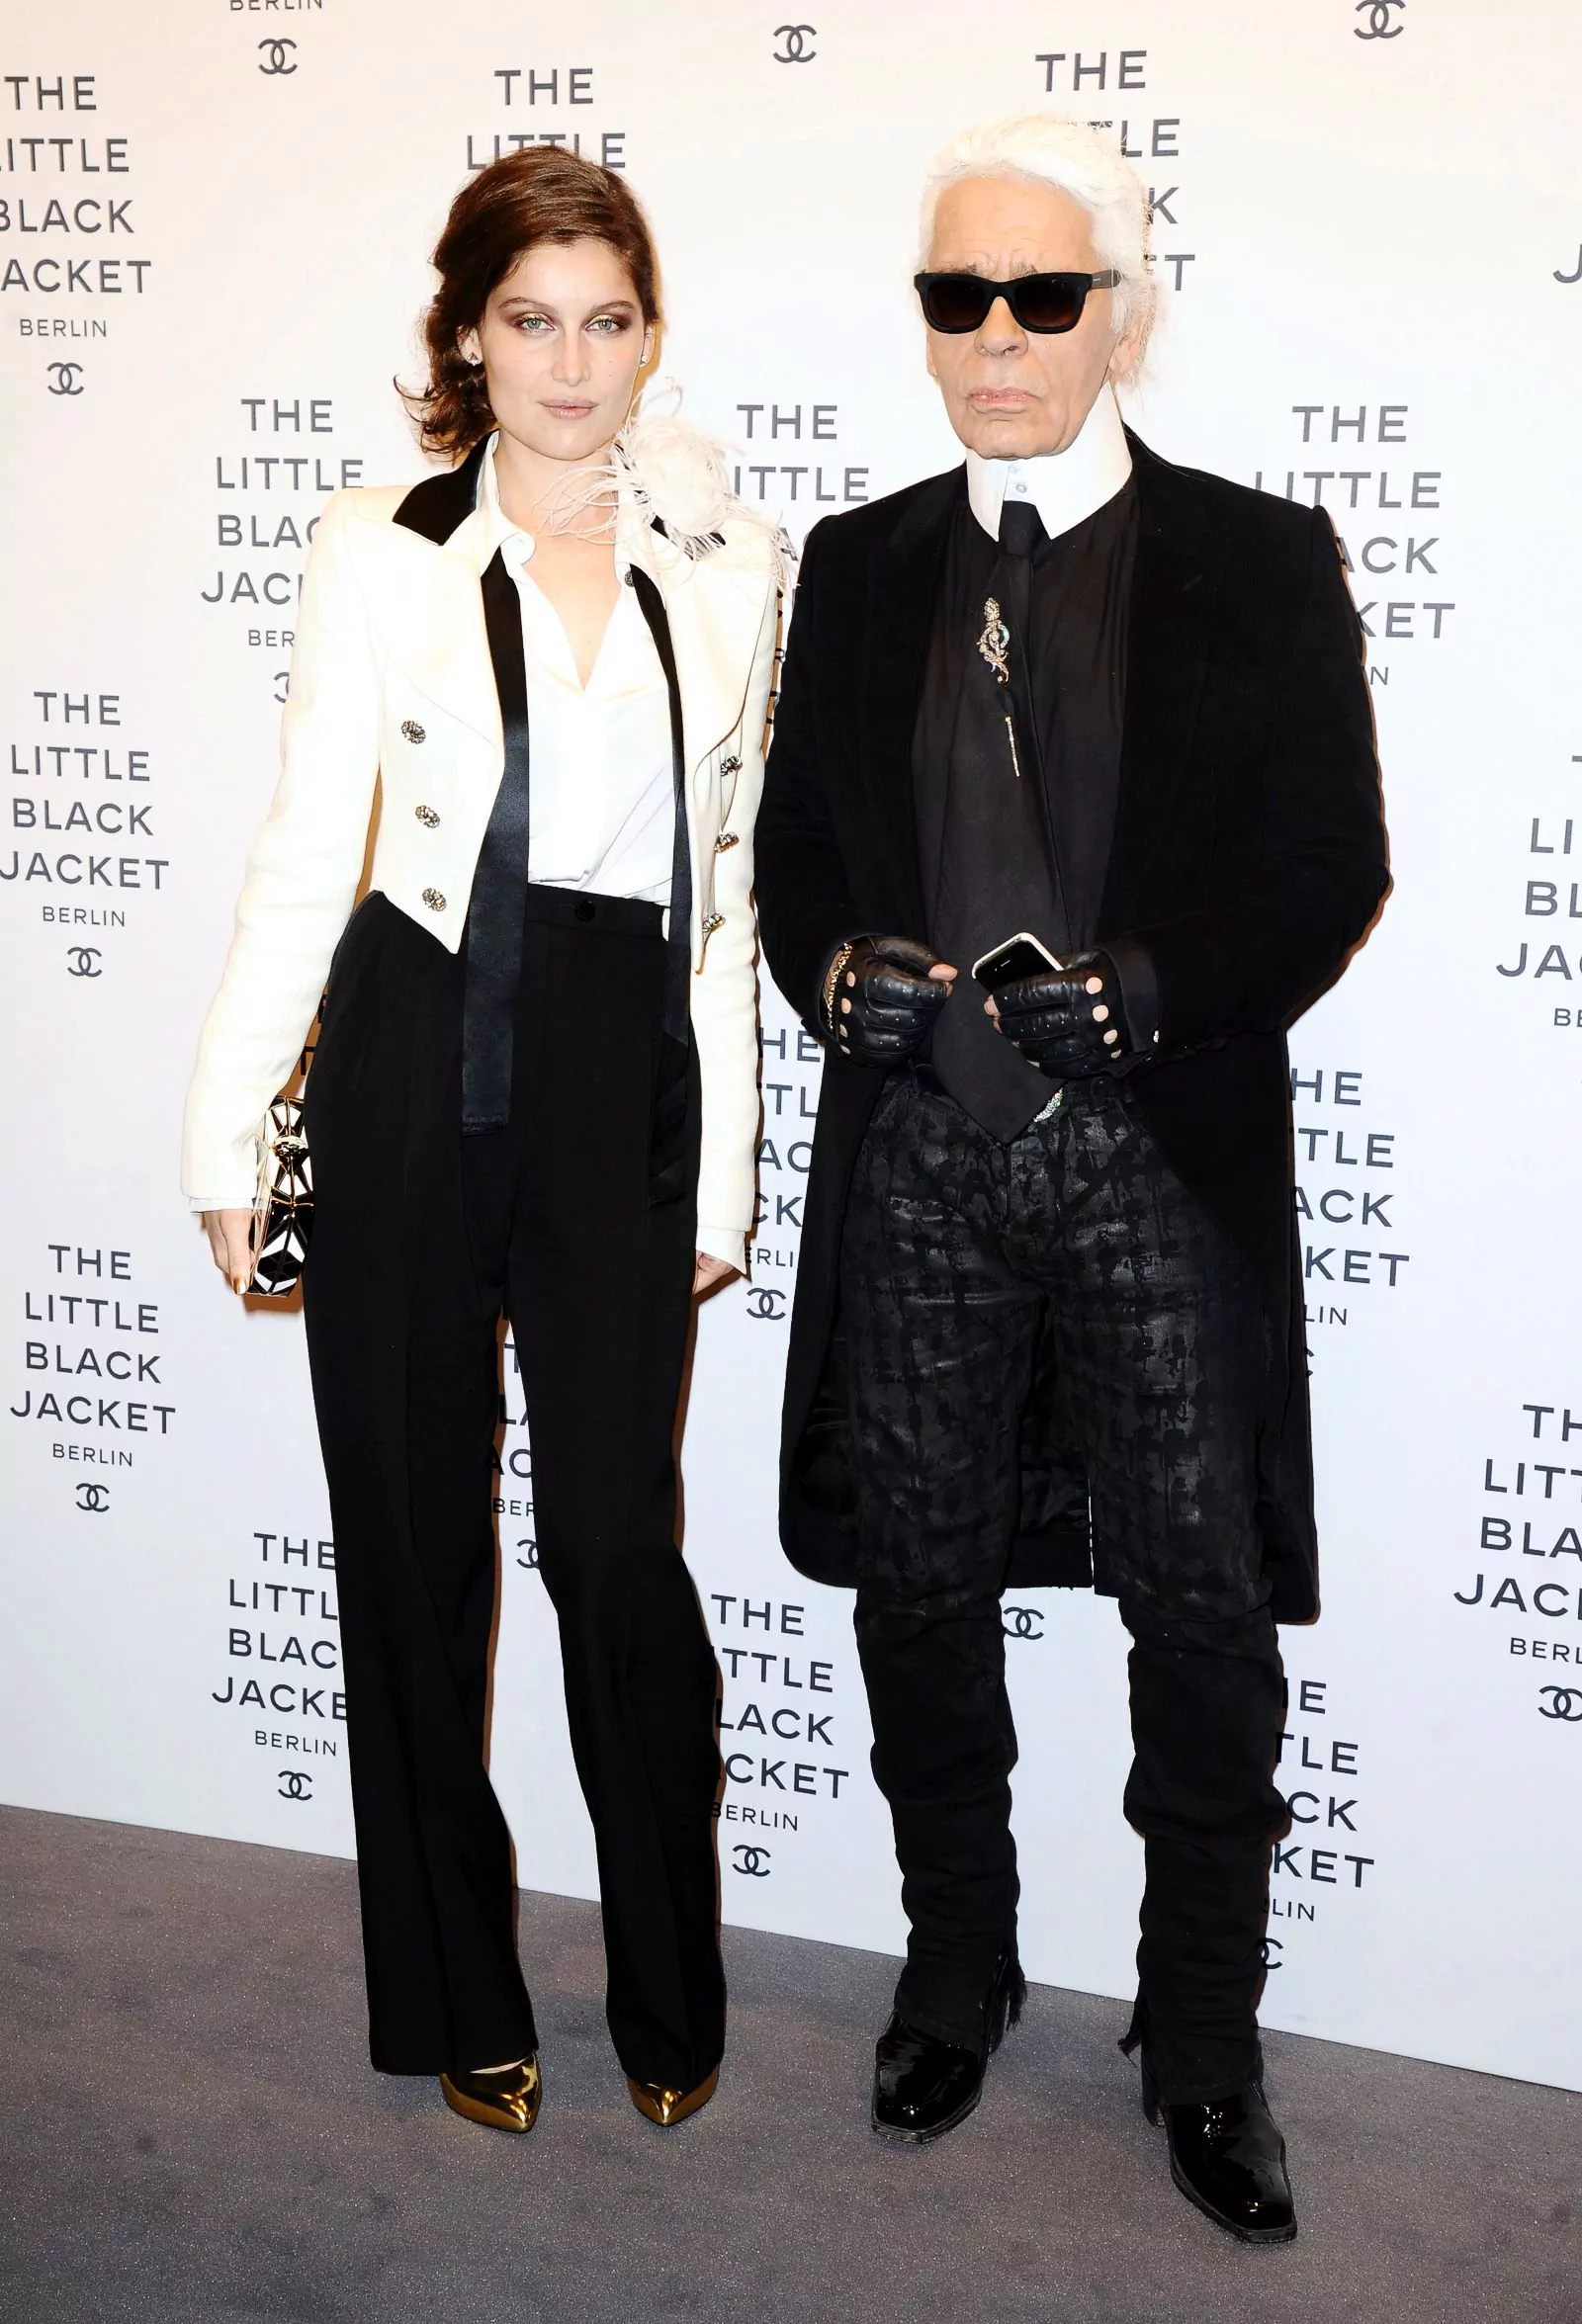 Летиция Каста и Карл Лагерфельд на открытии выставки Chanel: The Little Black Jacket в Берлине, 20 ноября 2012 г.